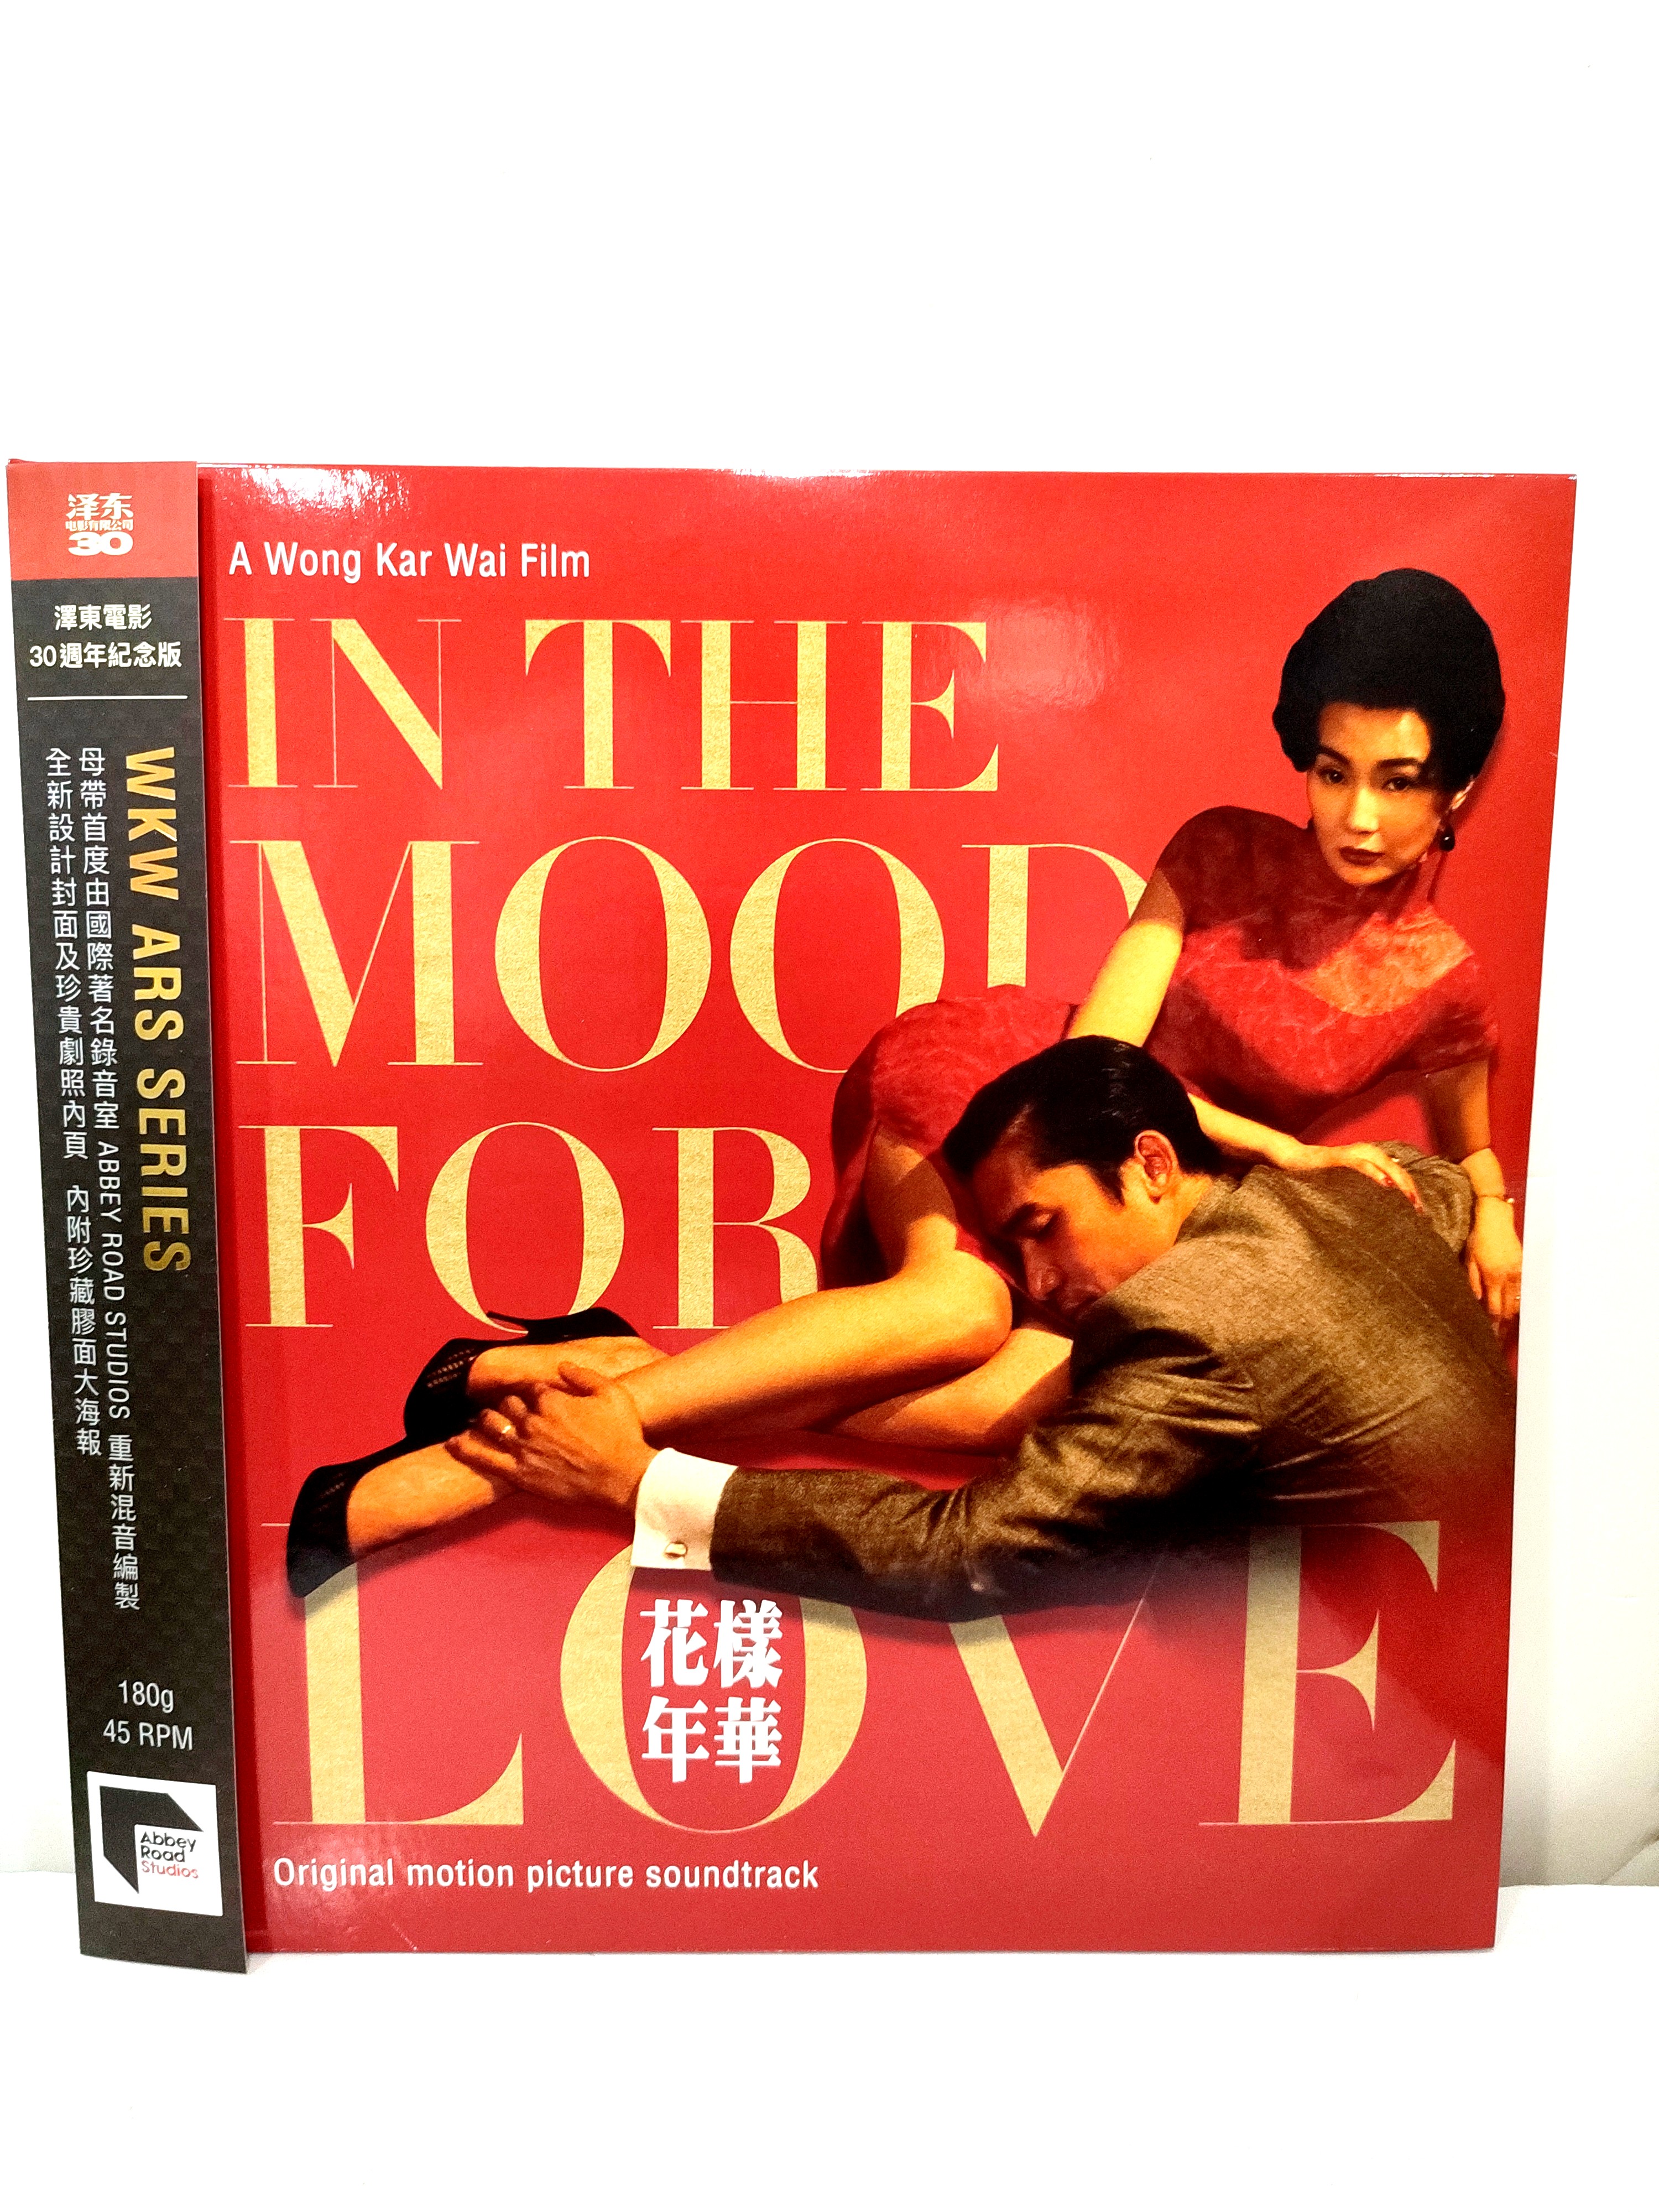 花樣年華in the mood for love 王家衛電影原聲黑膠唱片vinyl LP, 興趣 